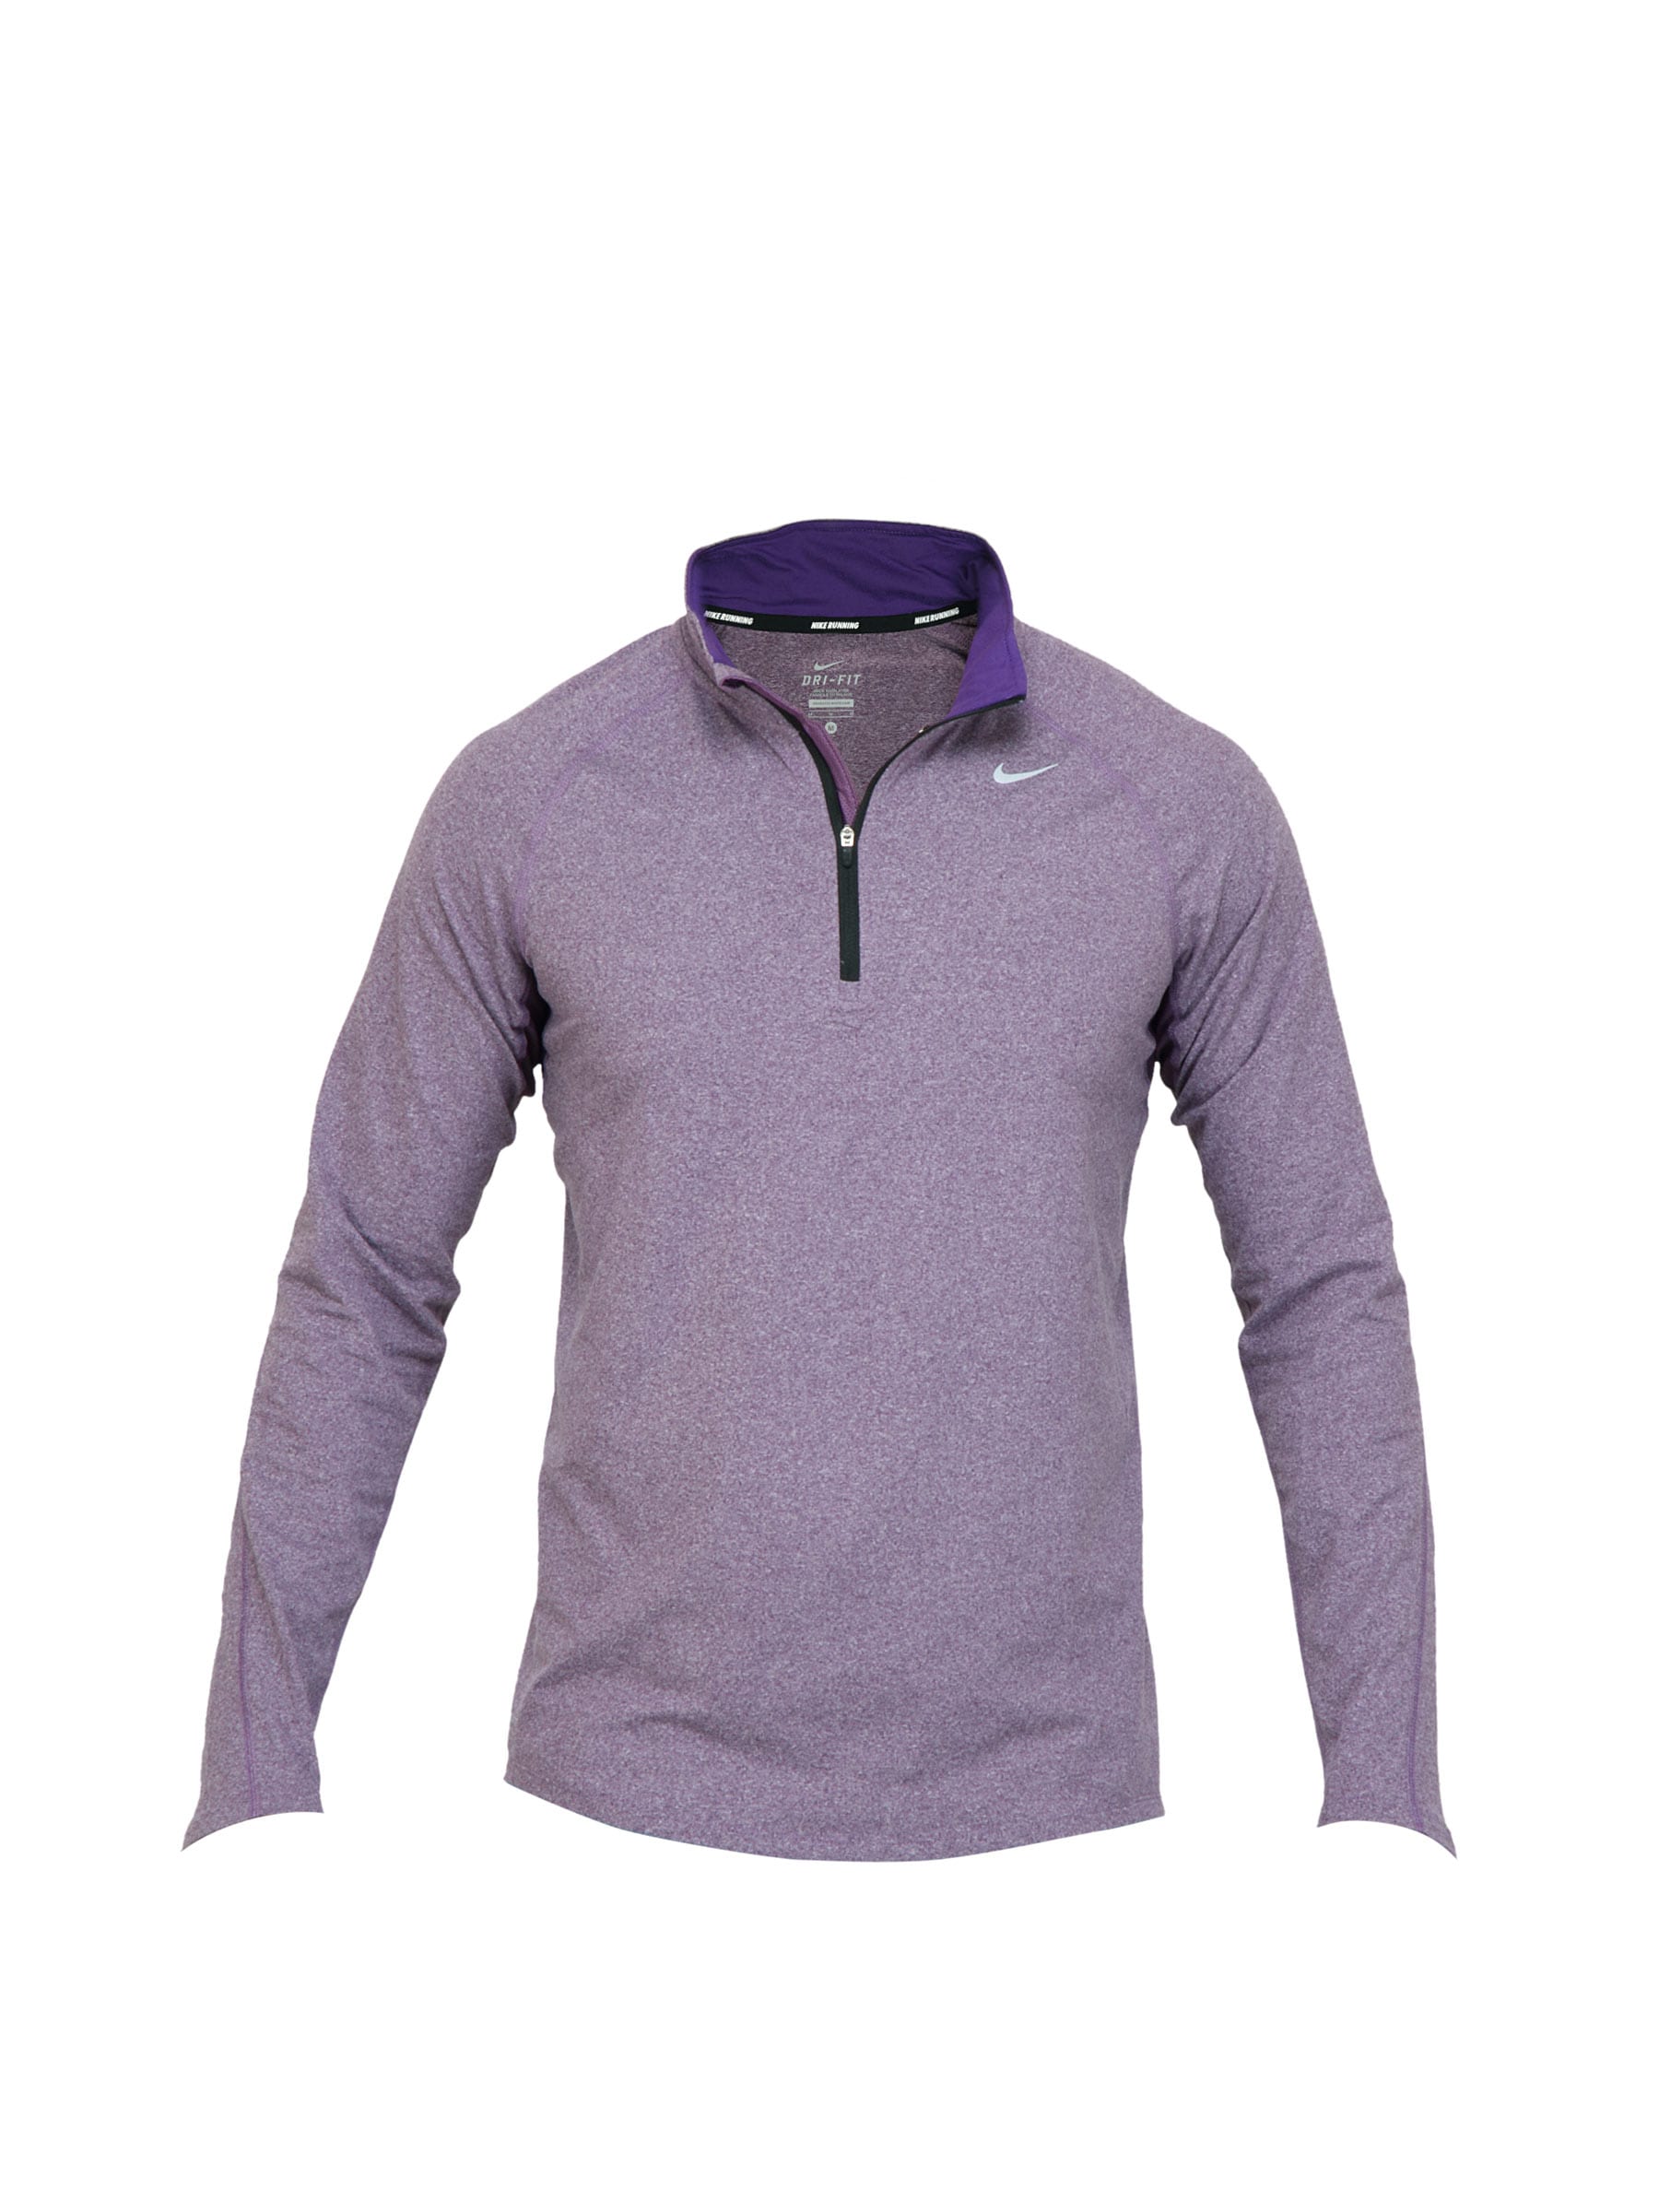 Nike Men Purple Sweatshirt